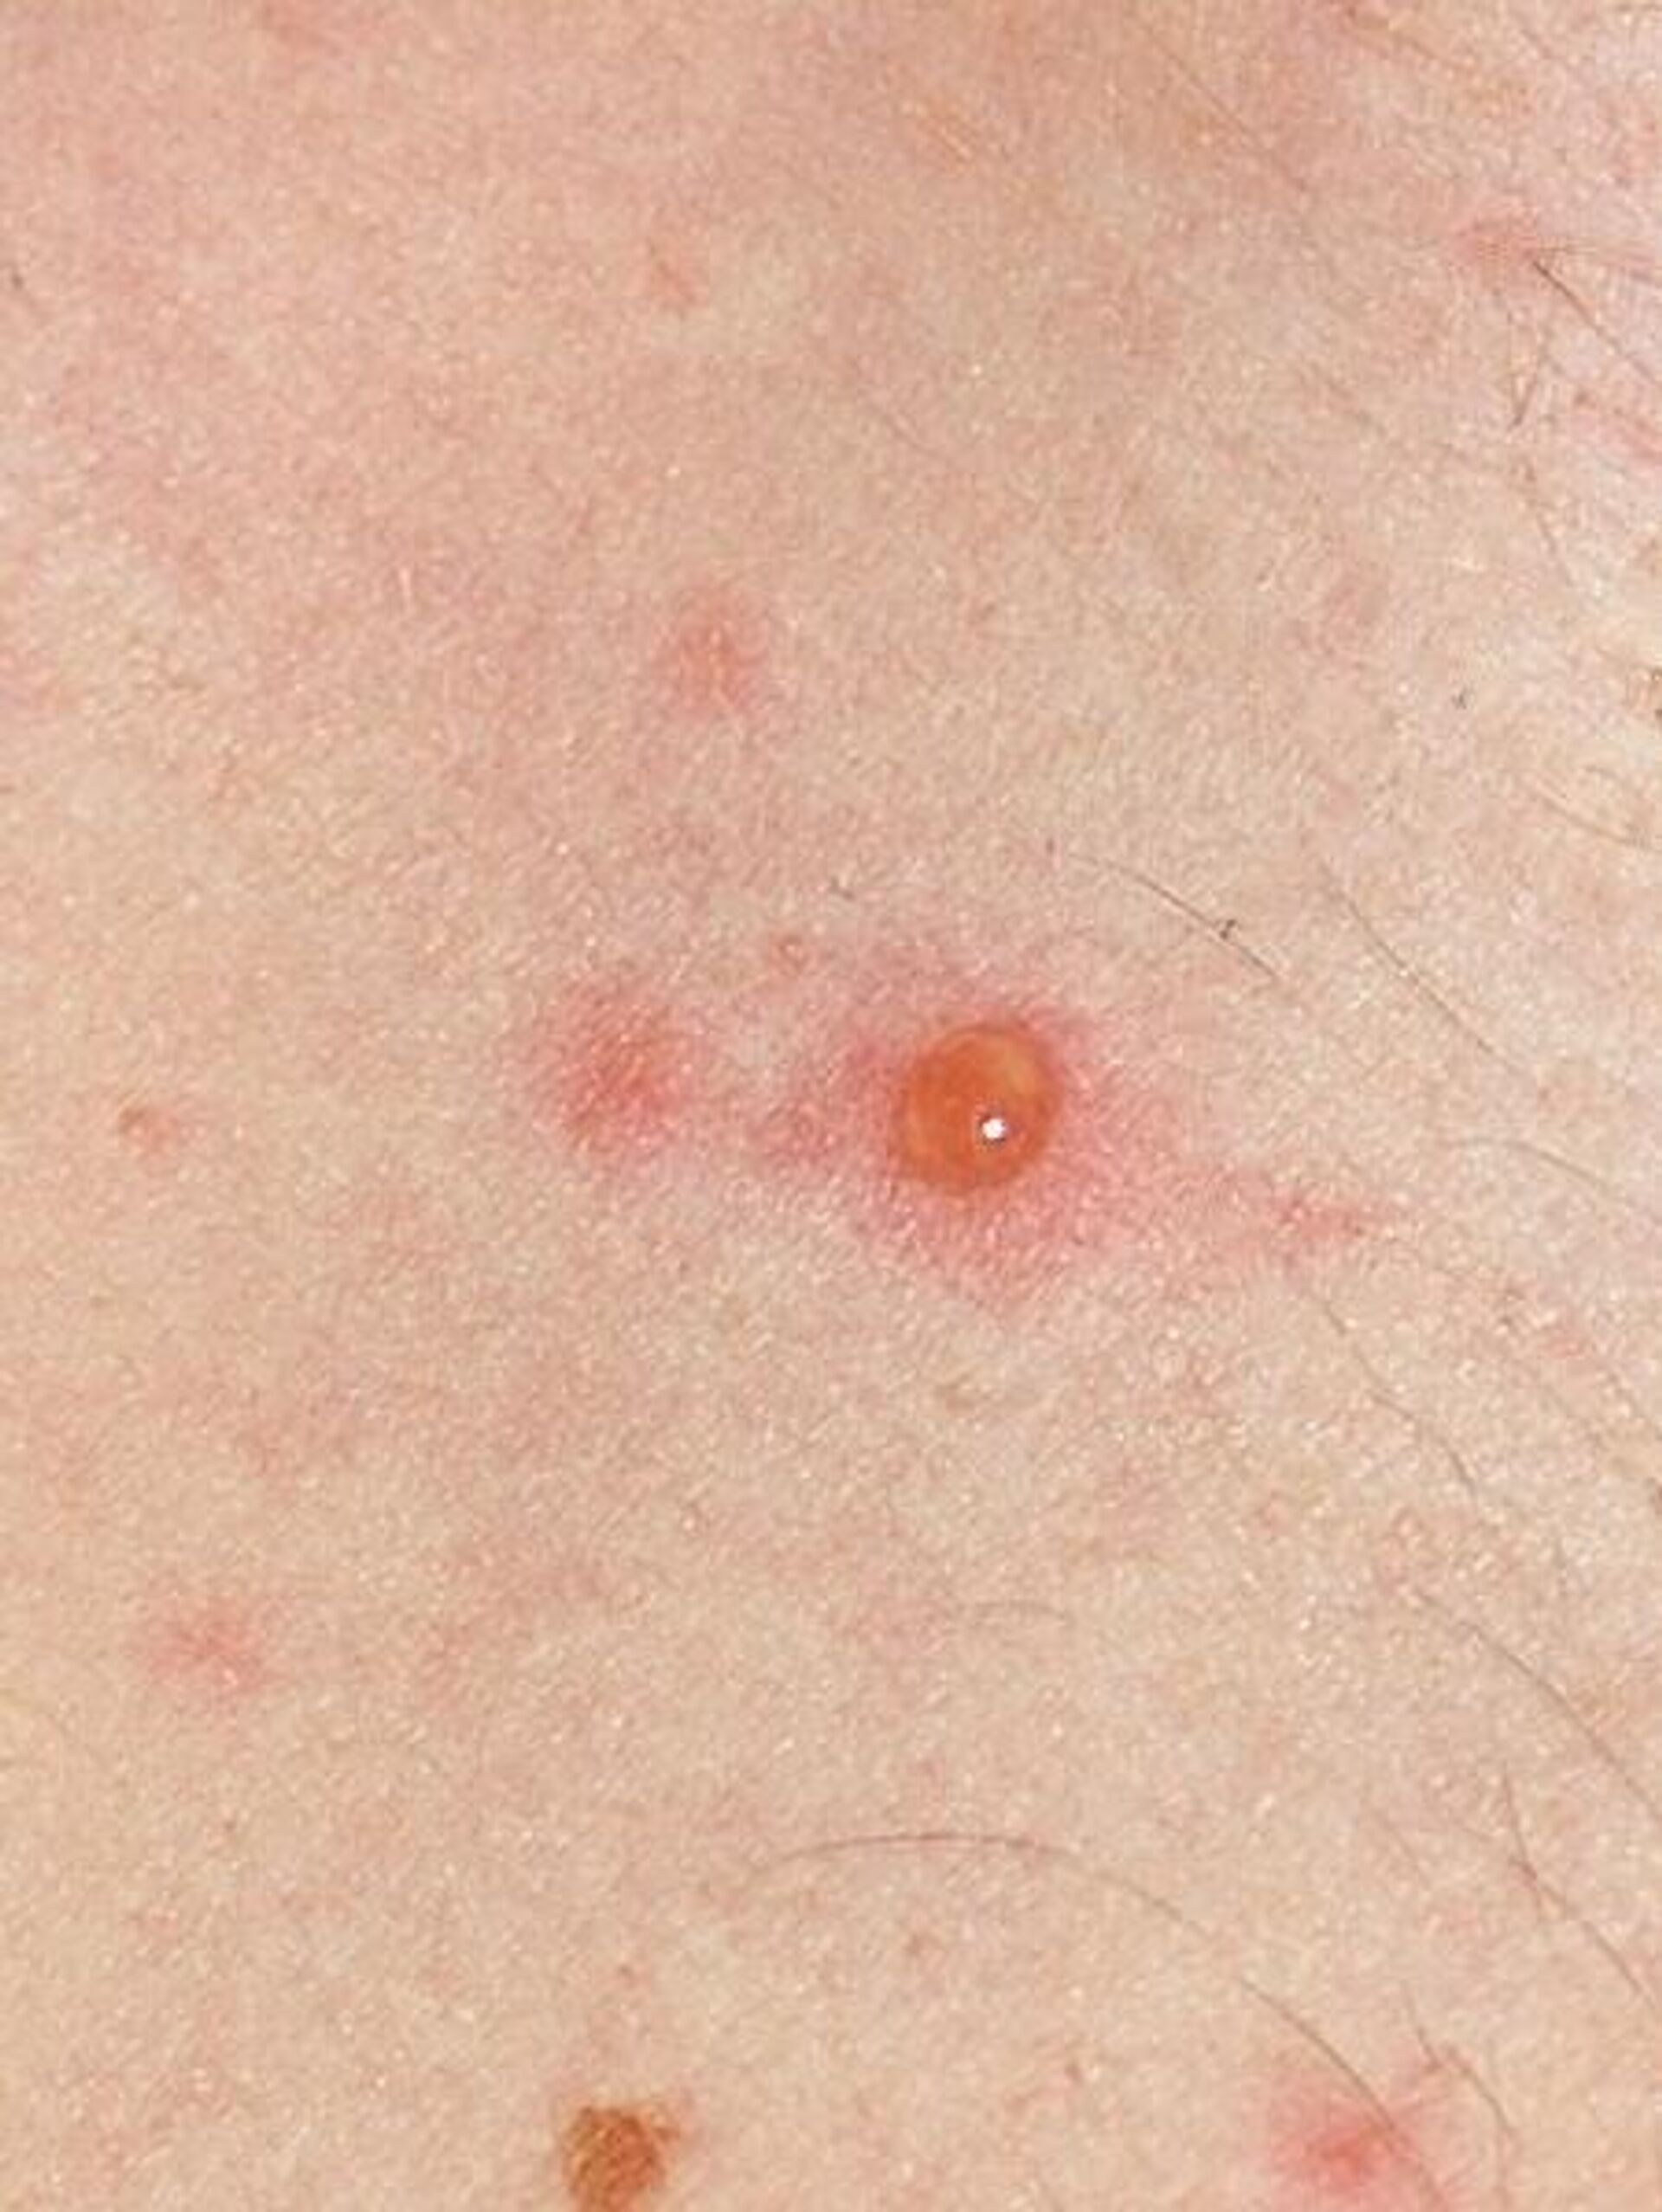 bubite pe corpul unei persoane cauzate de varicela